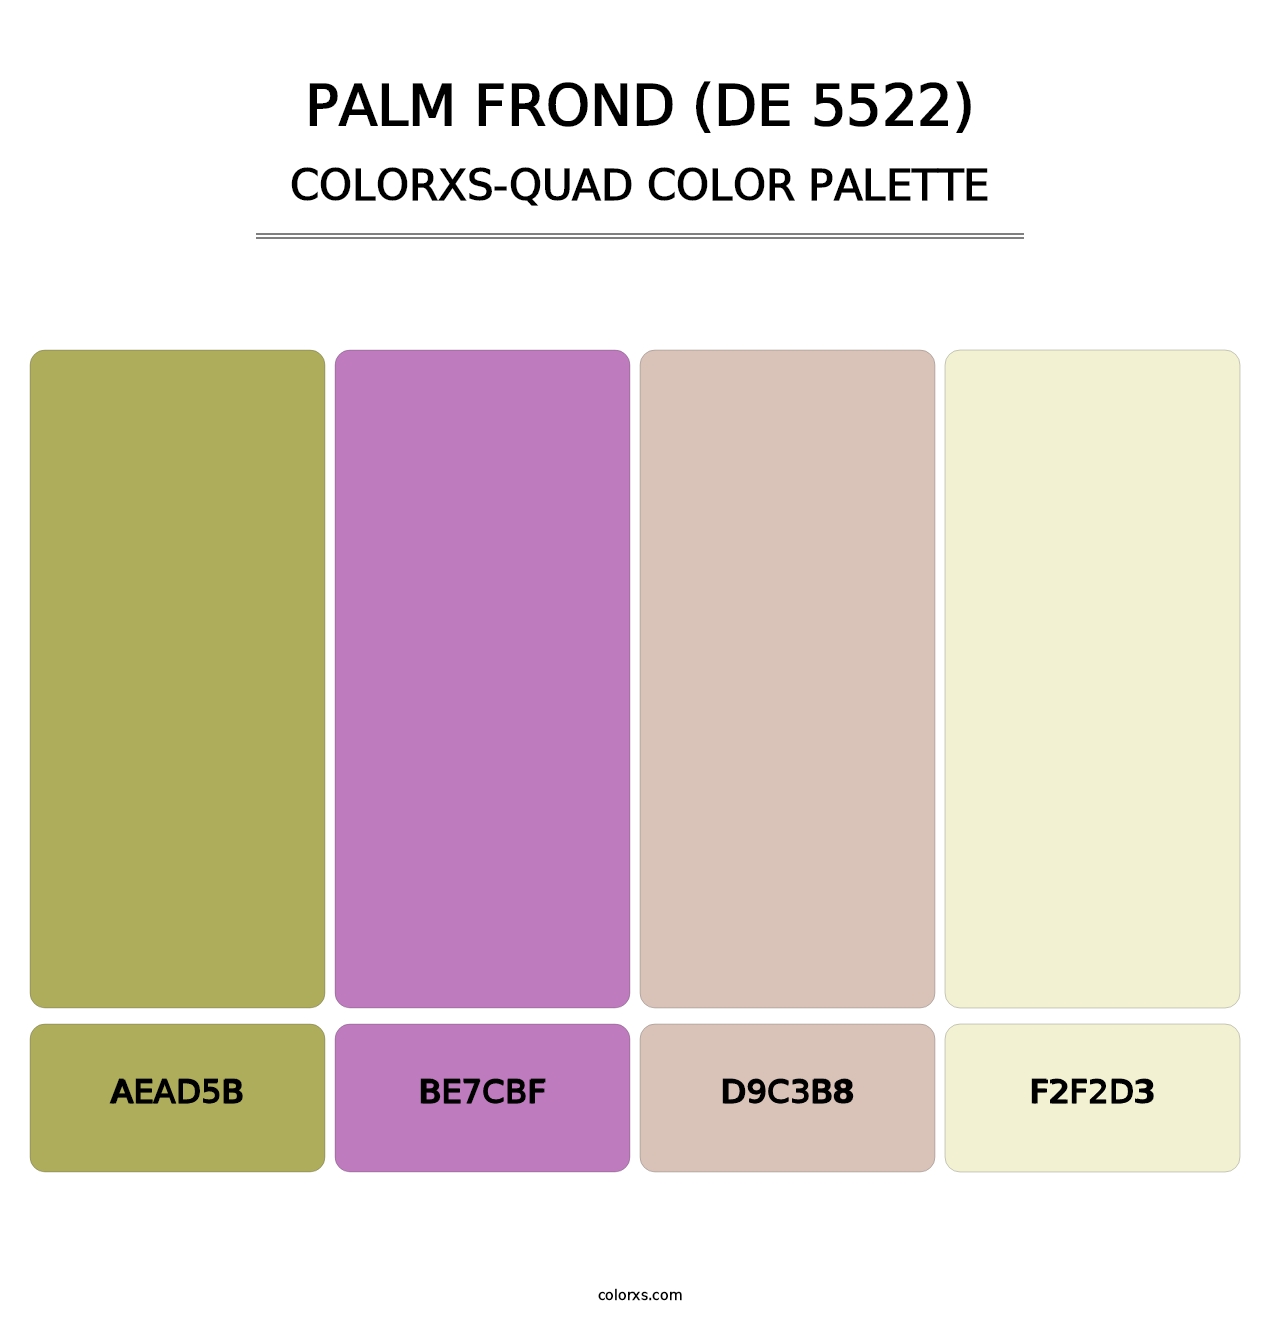 Palm Frond (DE 5522) - Colorxs Quad Palette